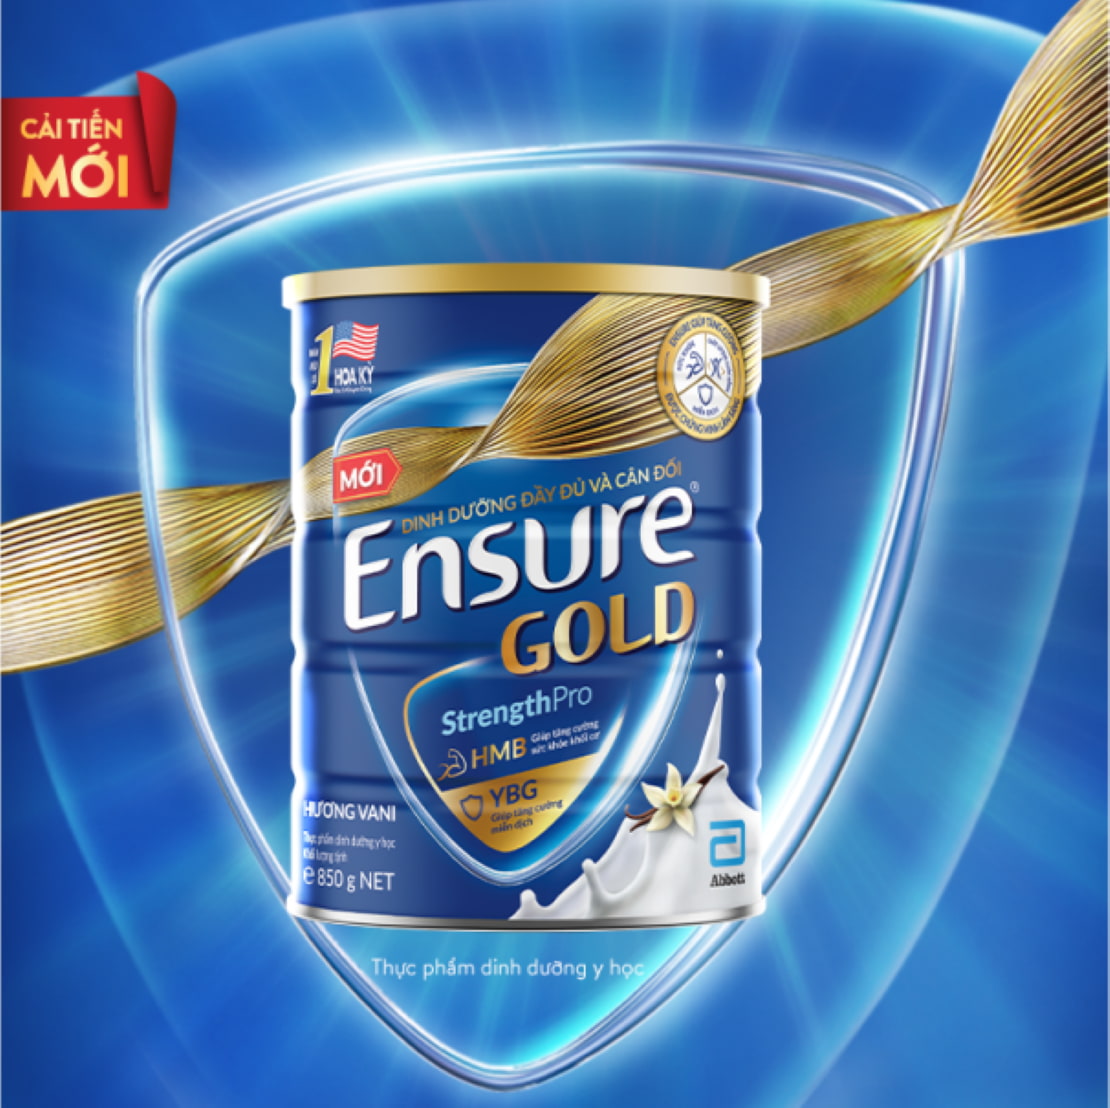 Ensure Gold cải tiến mới với công thức kép